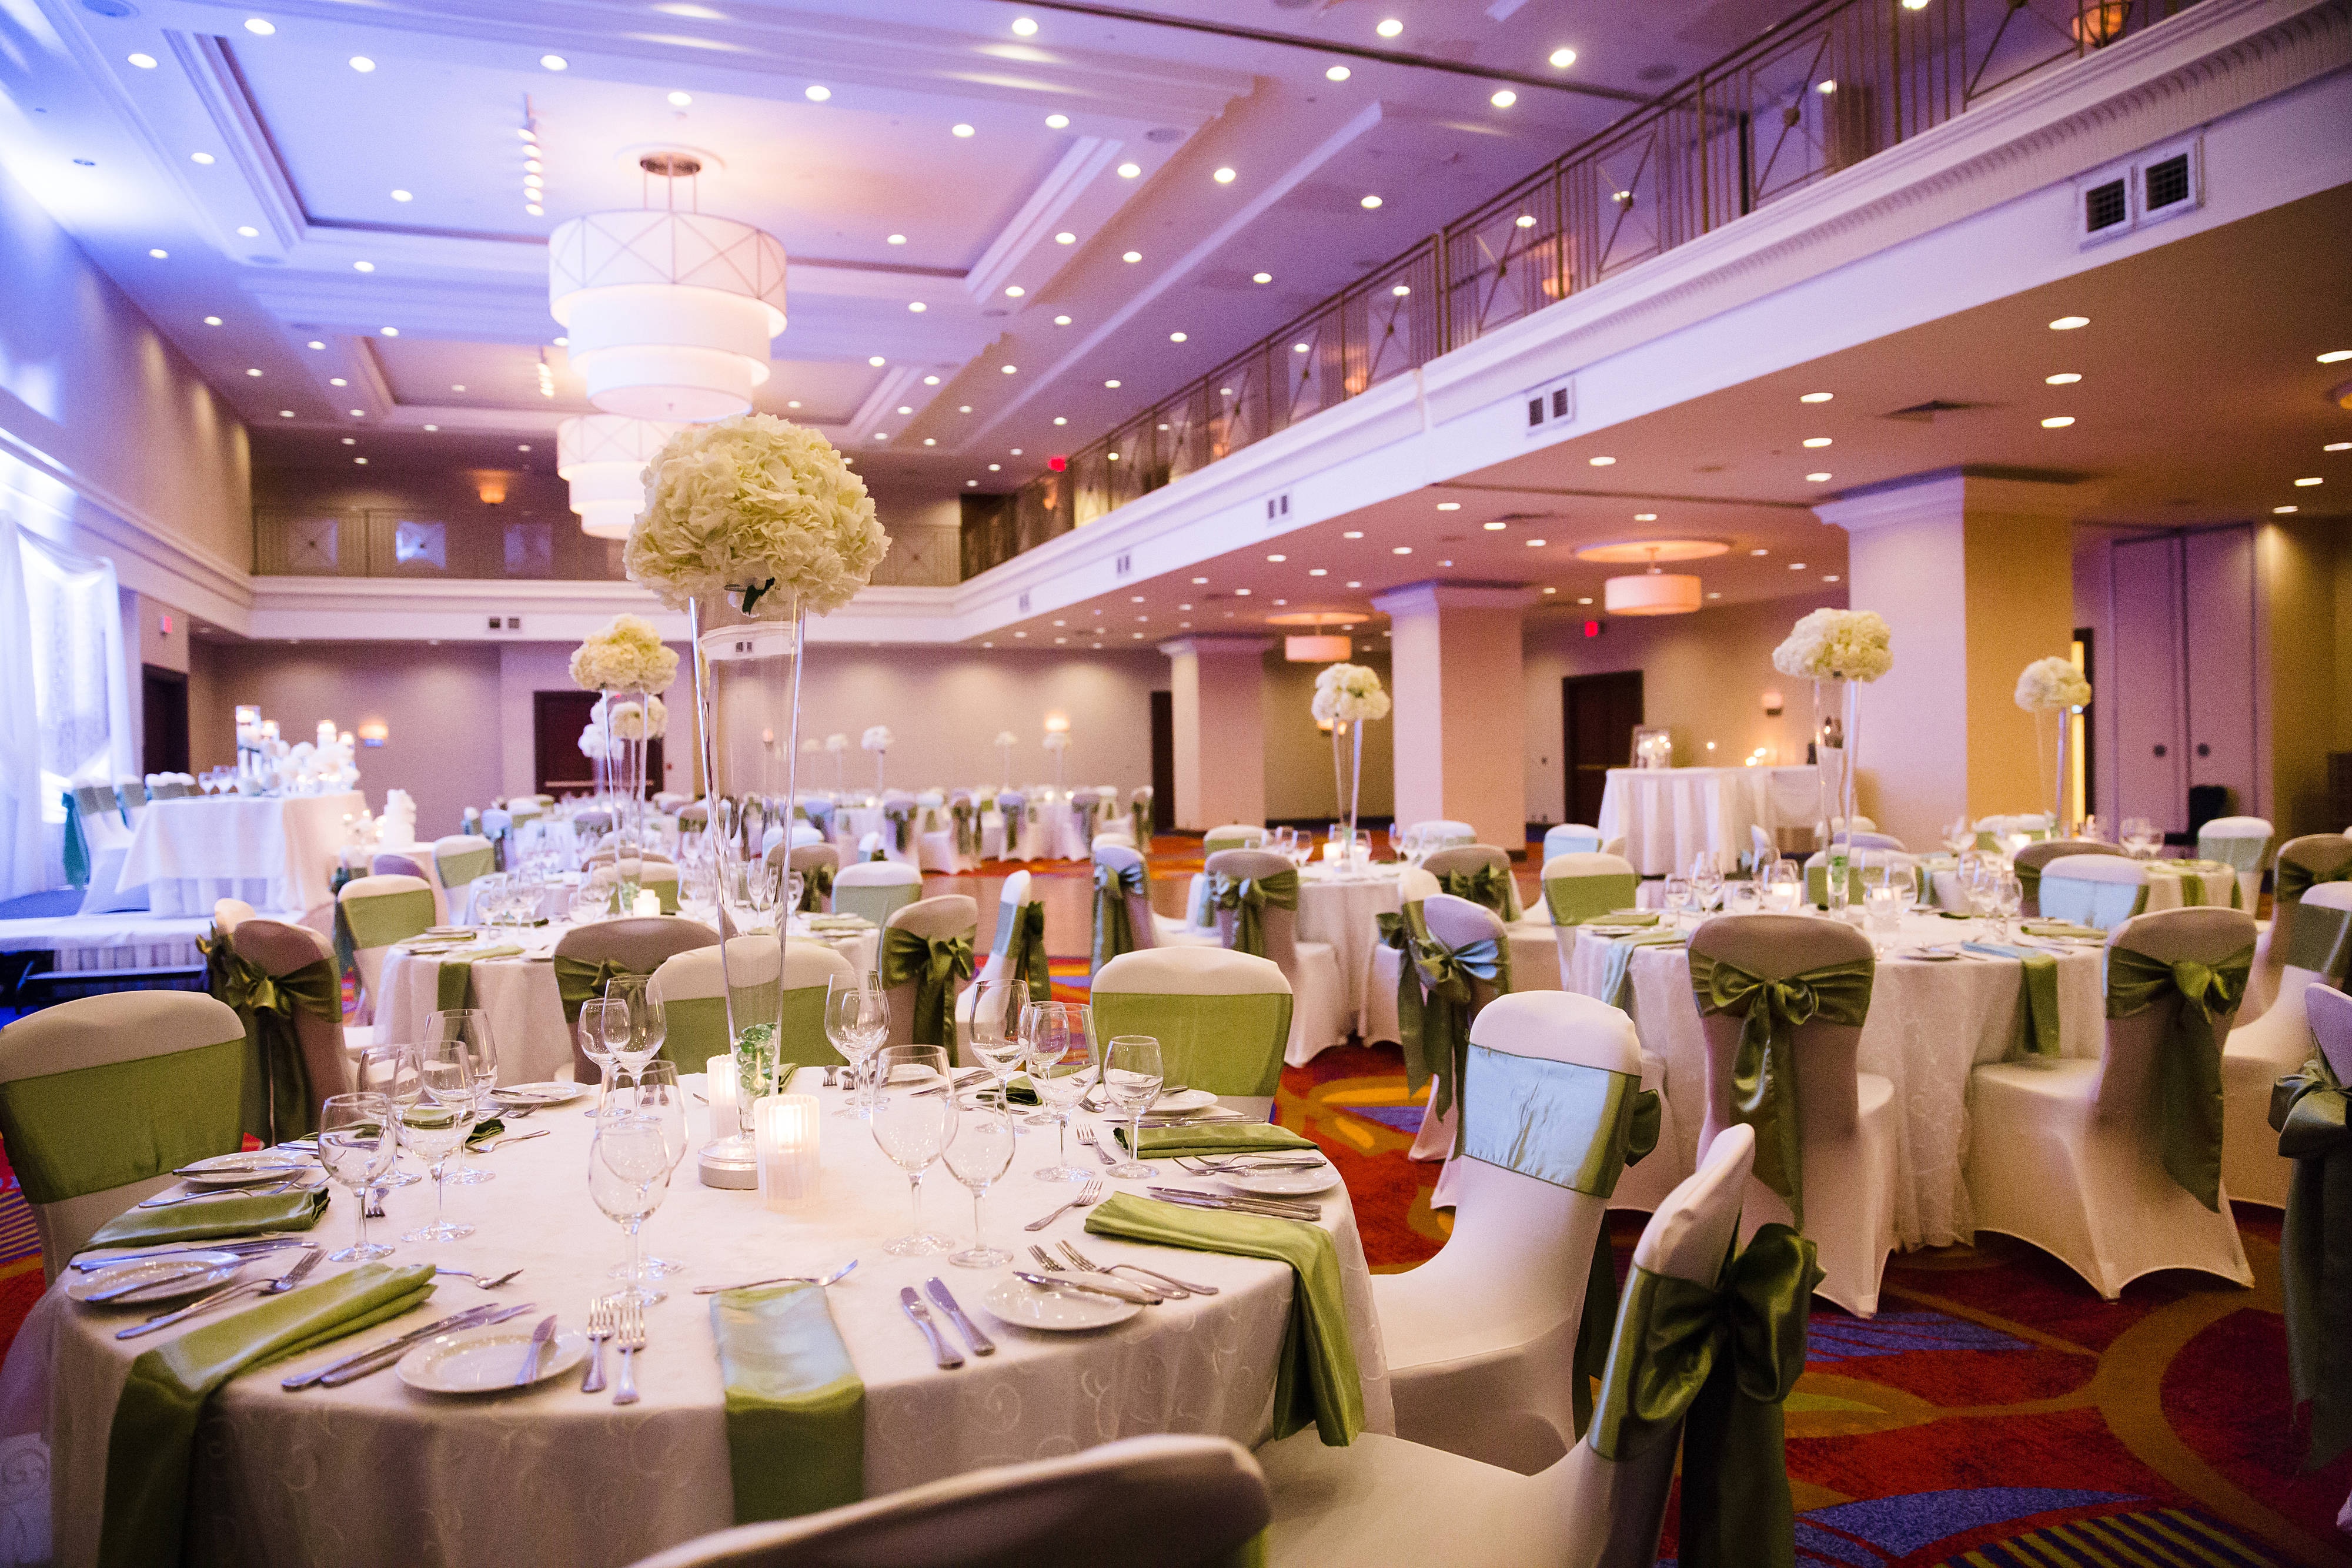 Ballroom set for wedding event